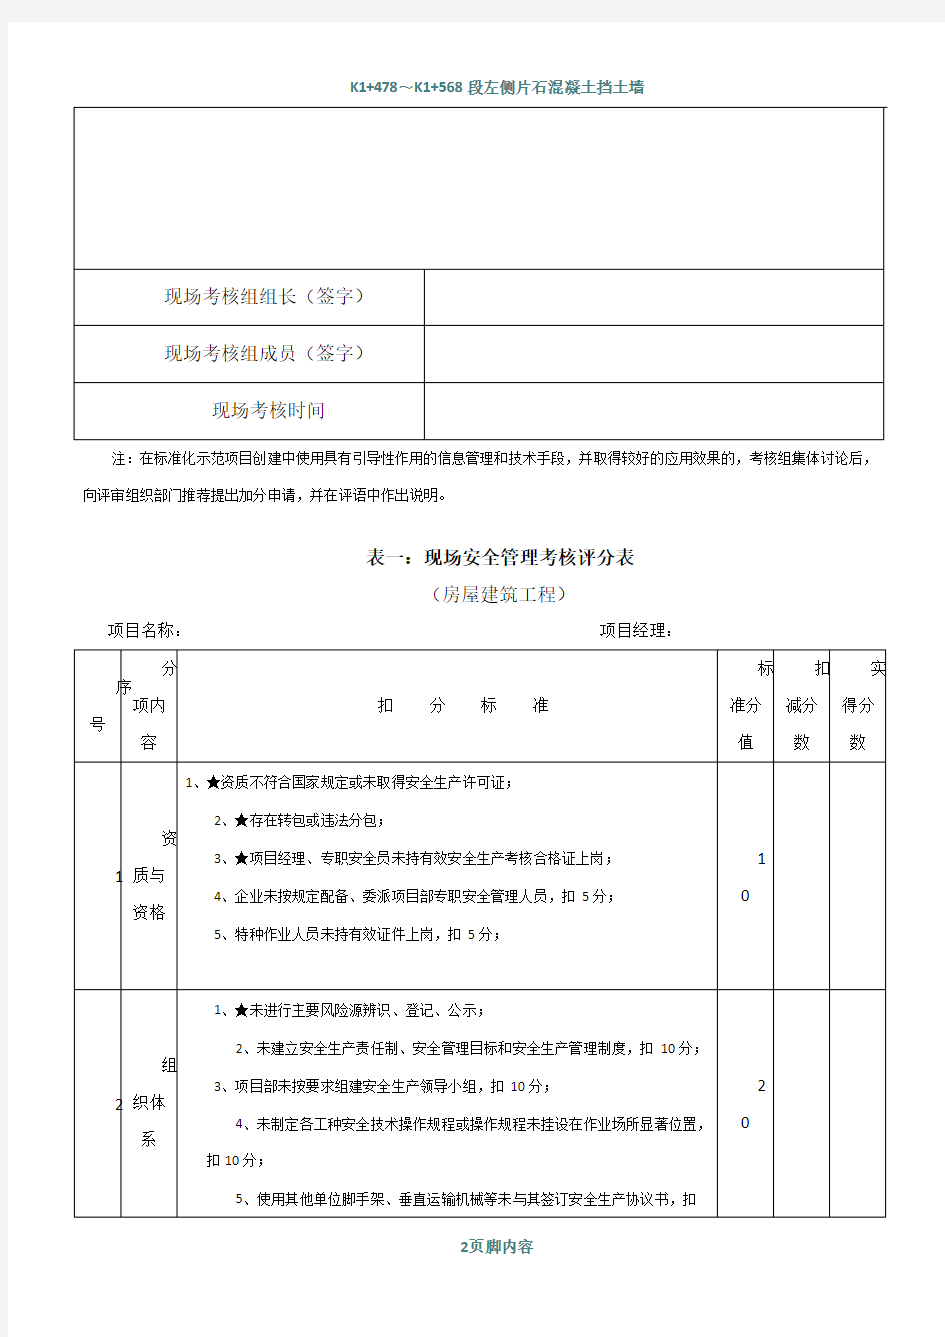 江苏省建筑安全文明施工标准化示范项目考核汇总表—房屋建筑工程